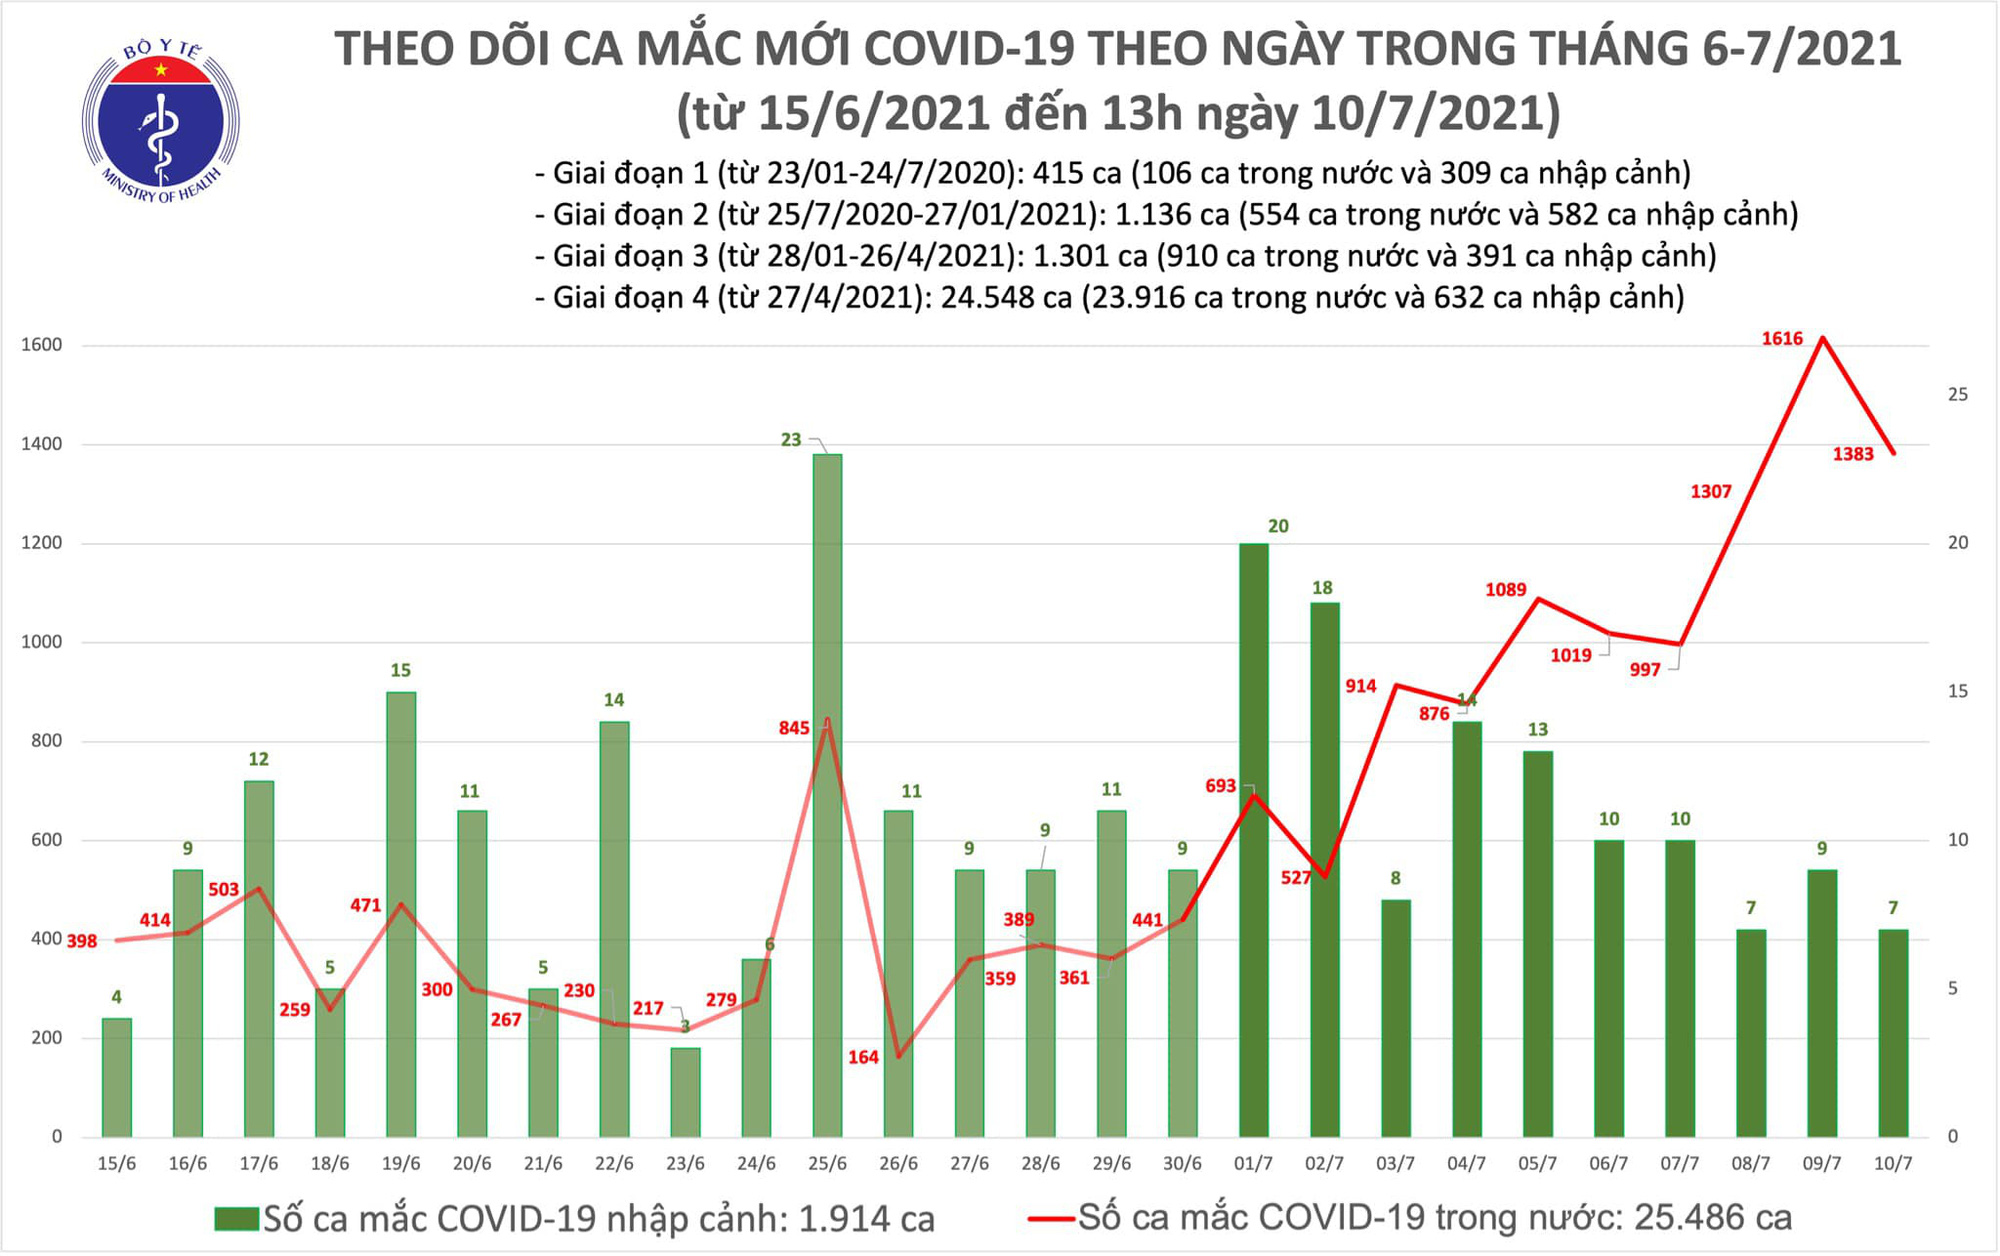 6 tiếng qua, Việt Nam đã ghi nhận 790 ca Covid-19 mới trong nước - Ảnh 1.